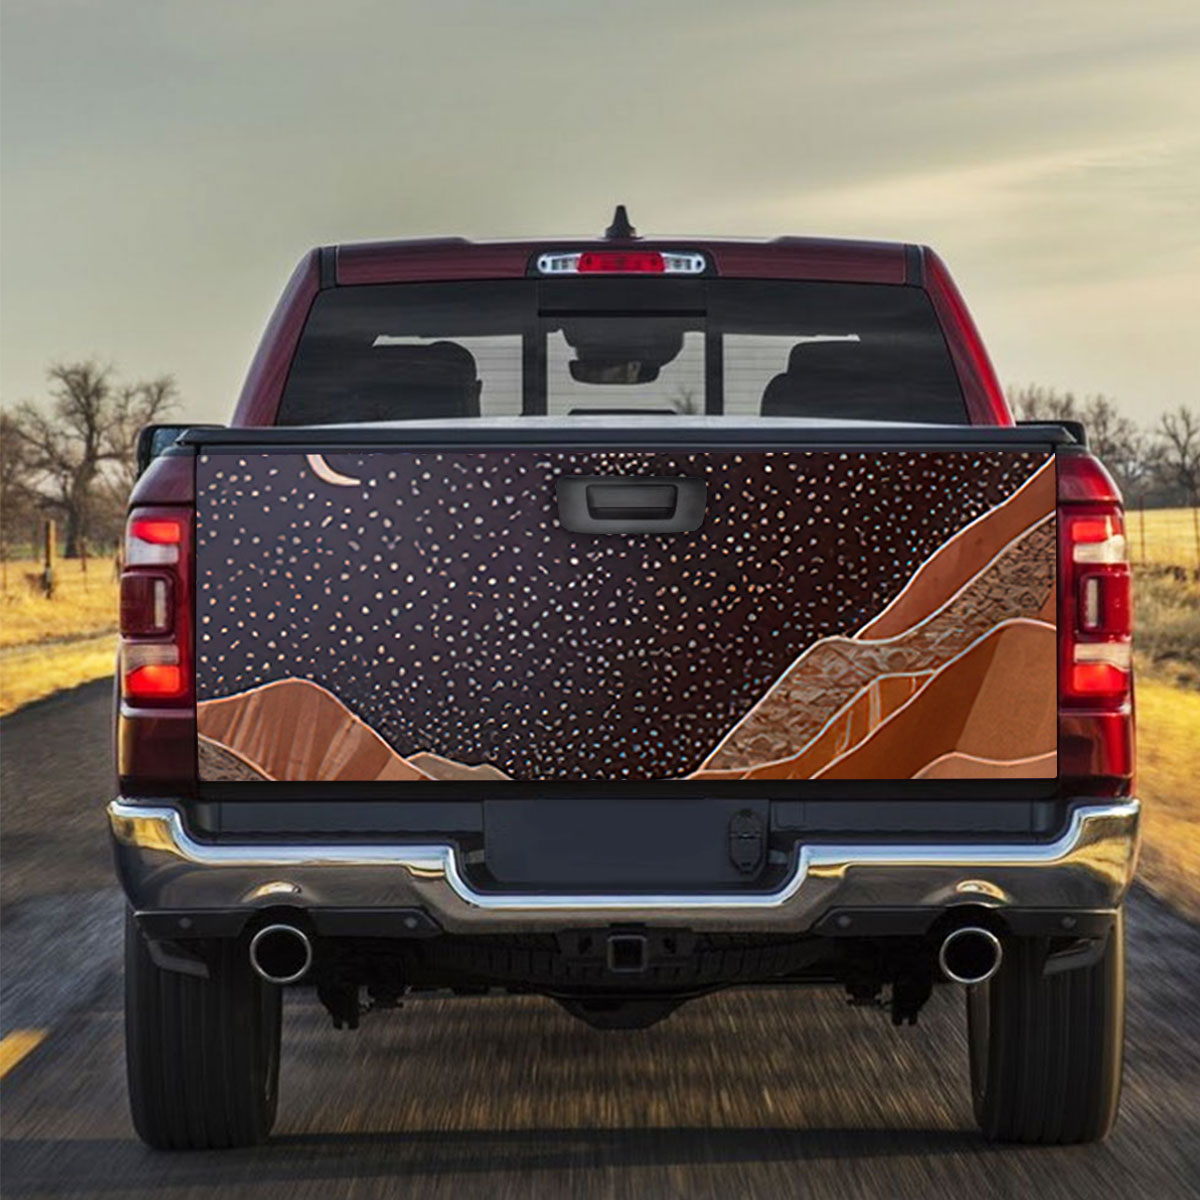 Starry Desert Truck Bed Decal